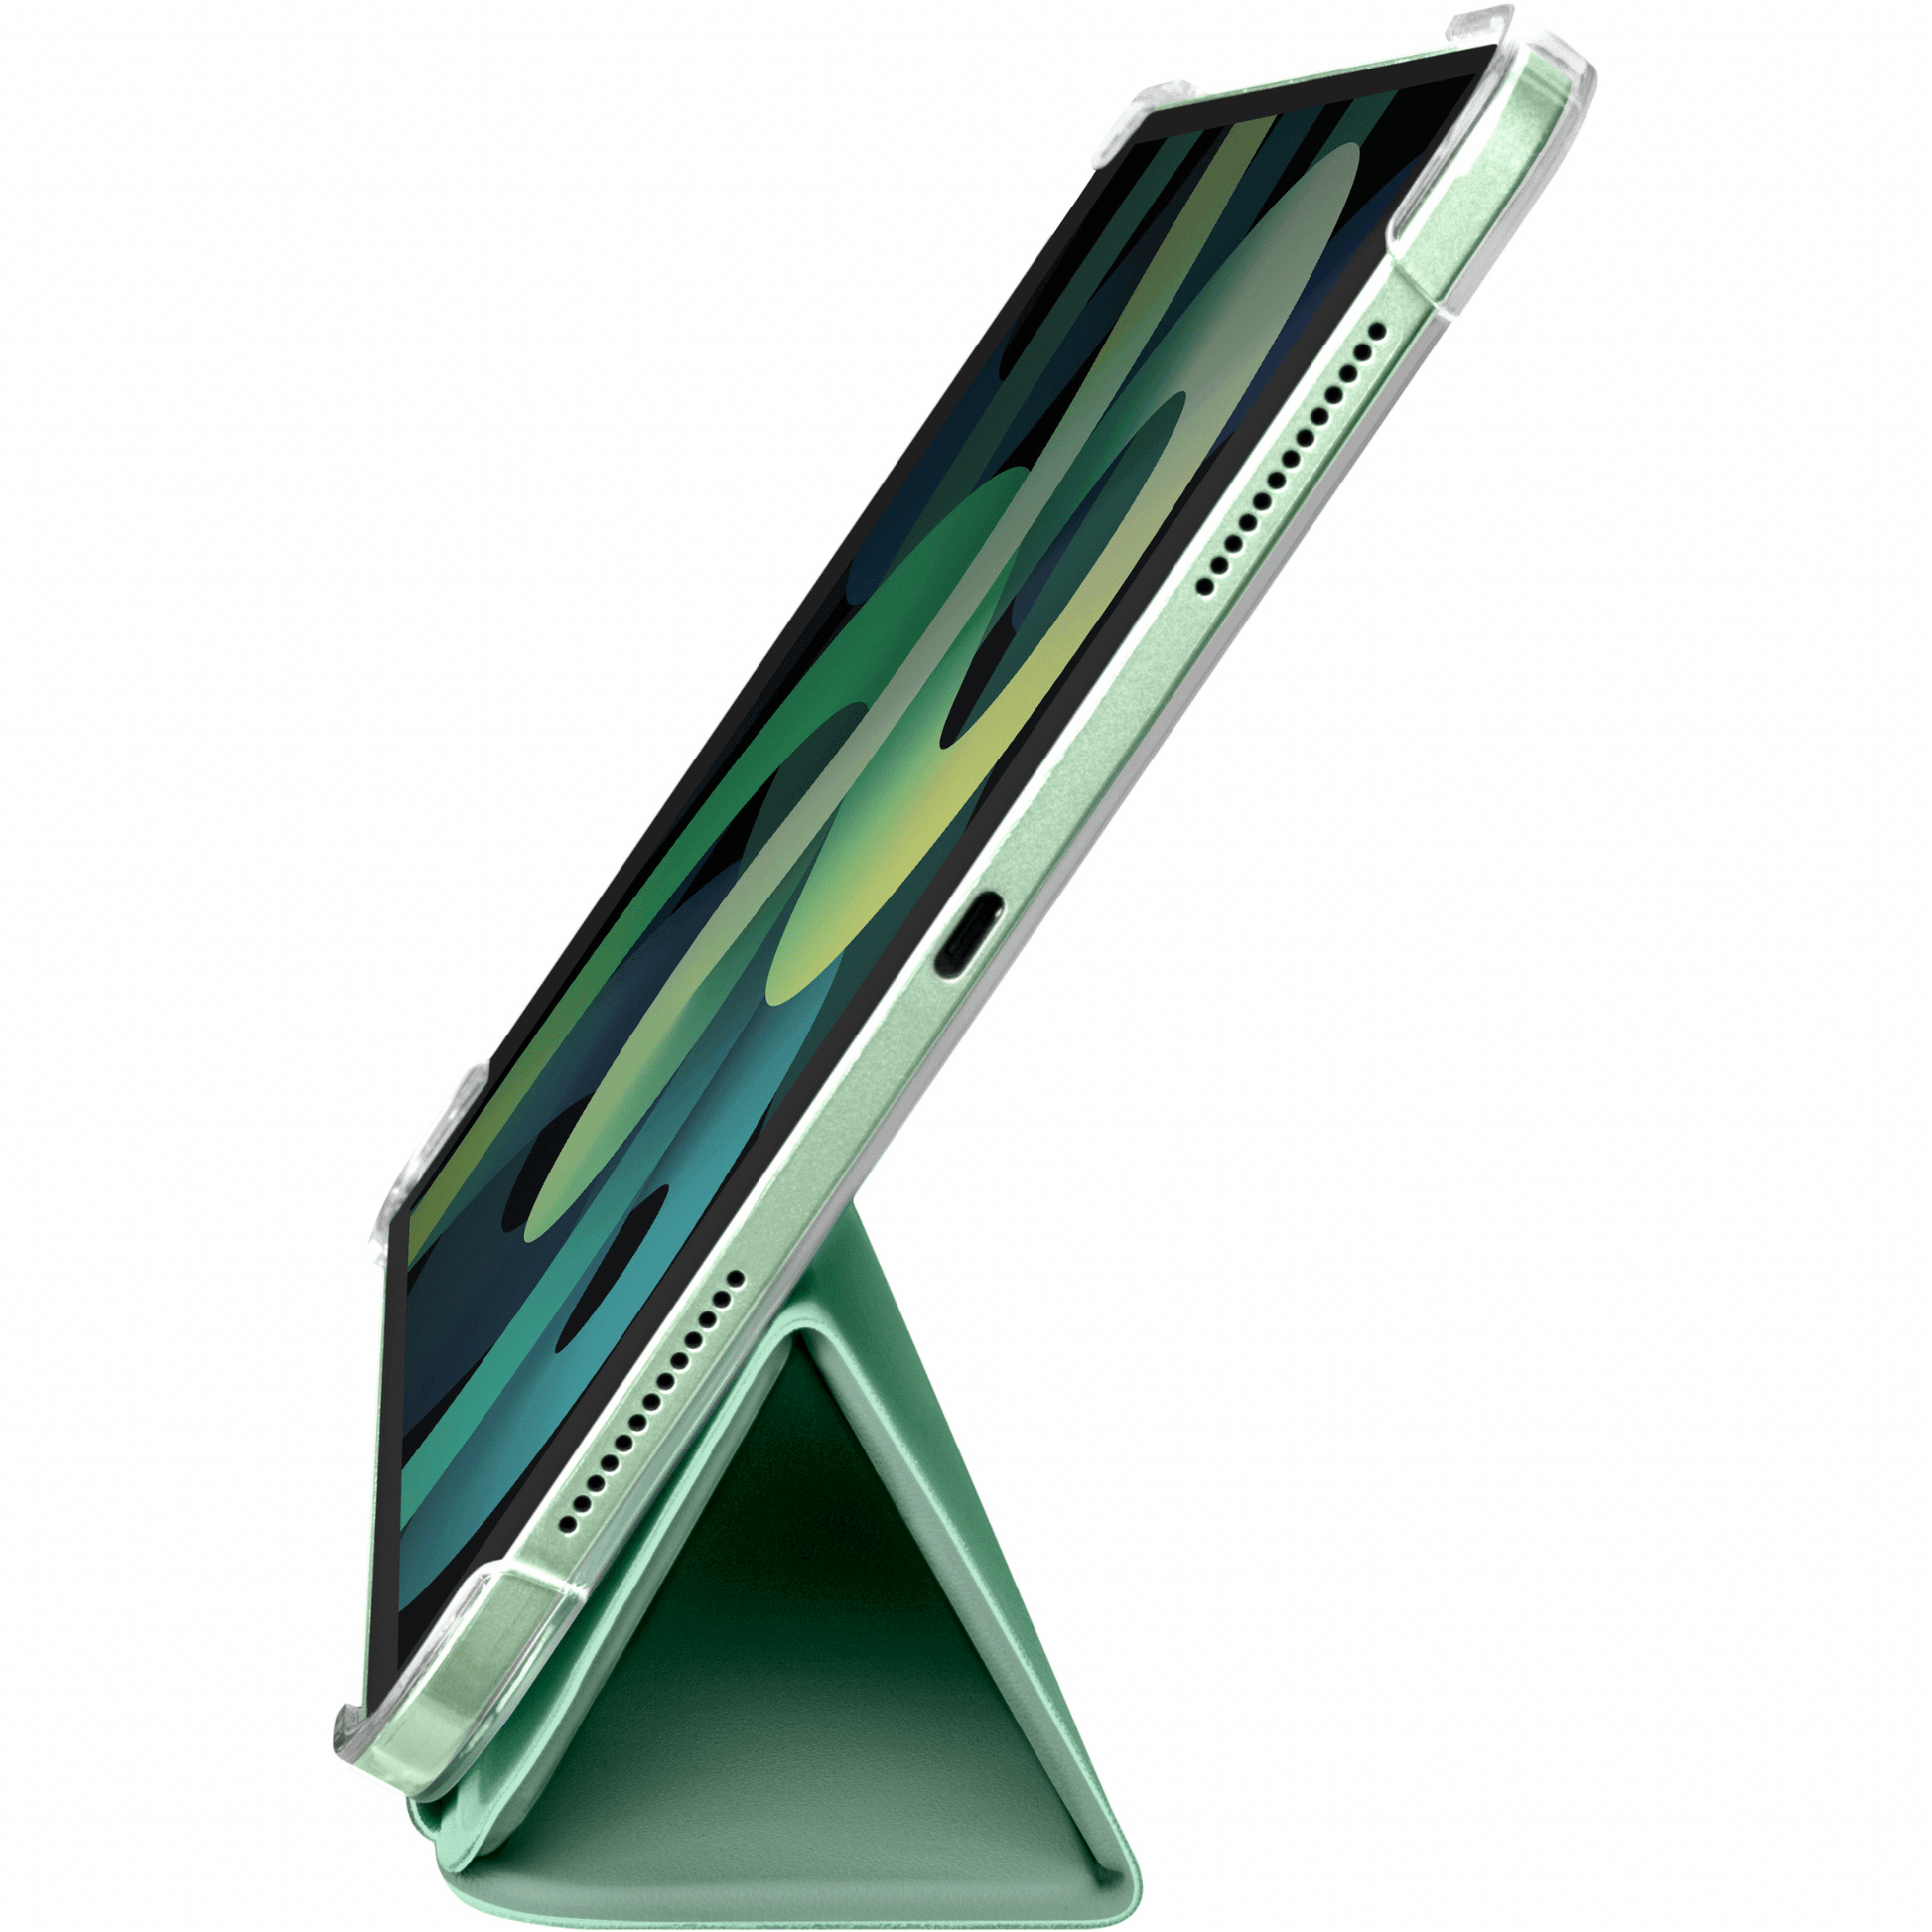 LAUT - iPad Air 10.9" (2020) hochwertige Schutzhülle mit Stand- und Sleep-/Wakefunktion sowie Apple Pencil Abteil - Grün